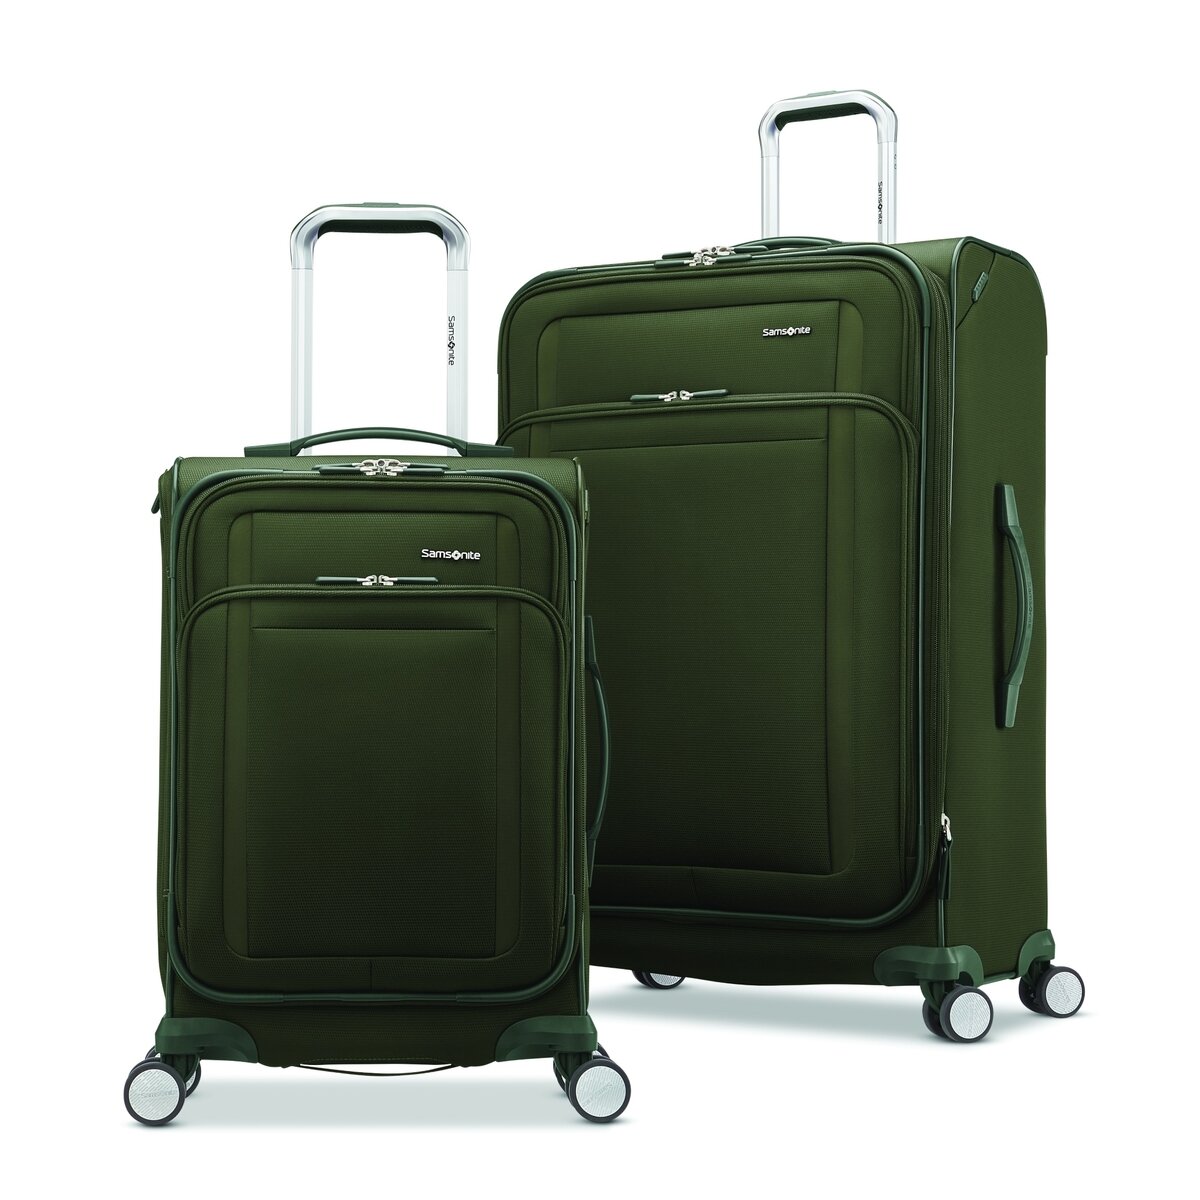 大型 スーツケース 緑 samsonite - ビジネスバッグ